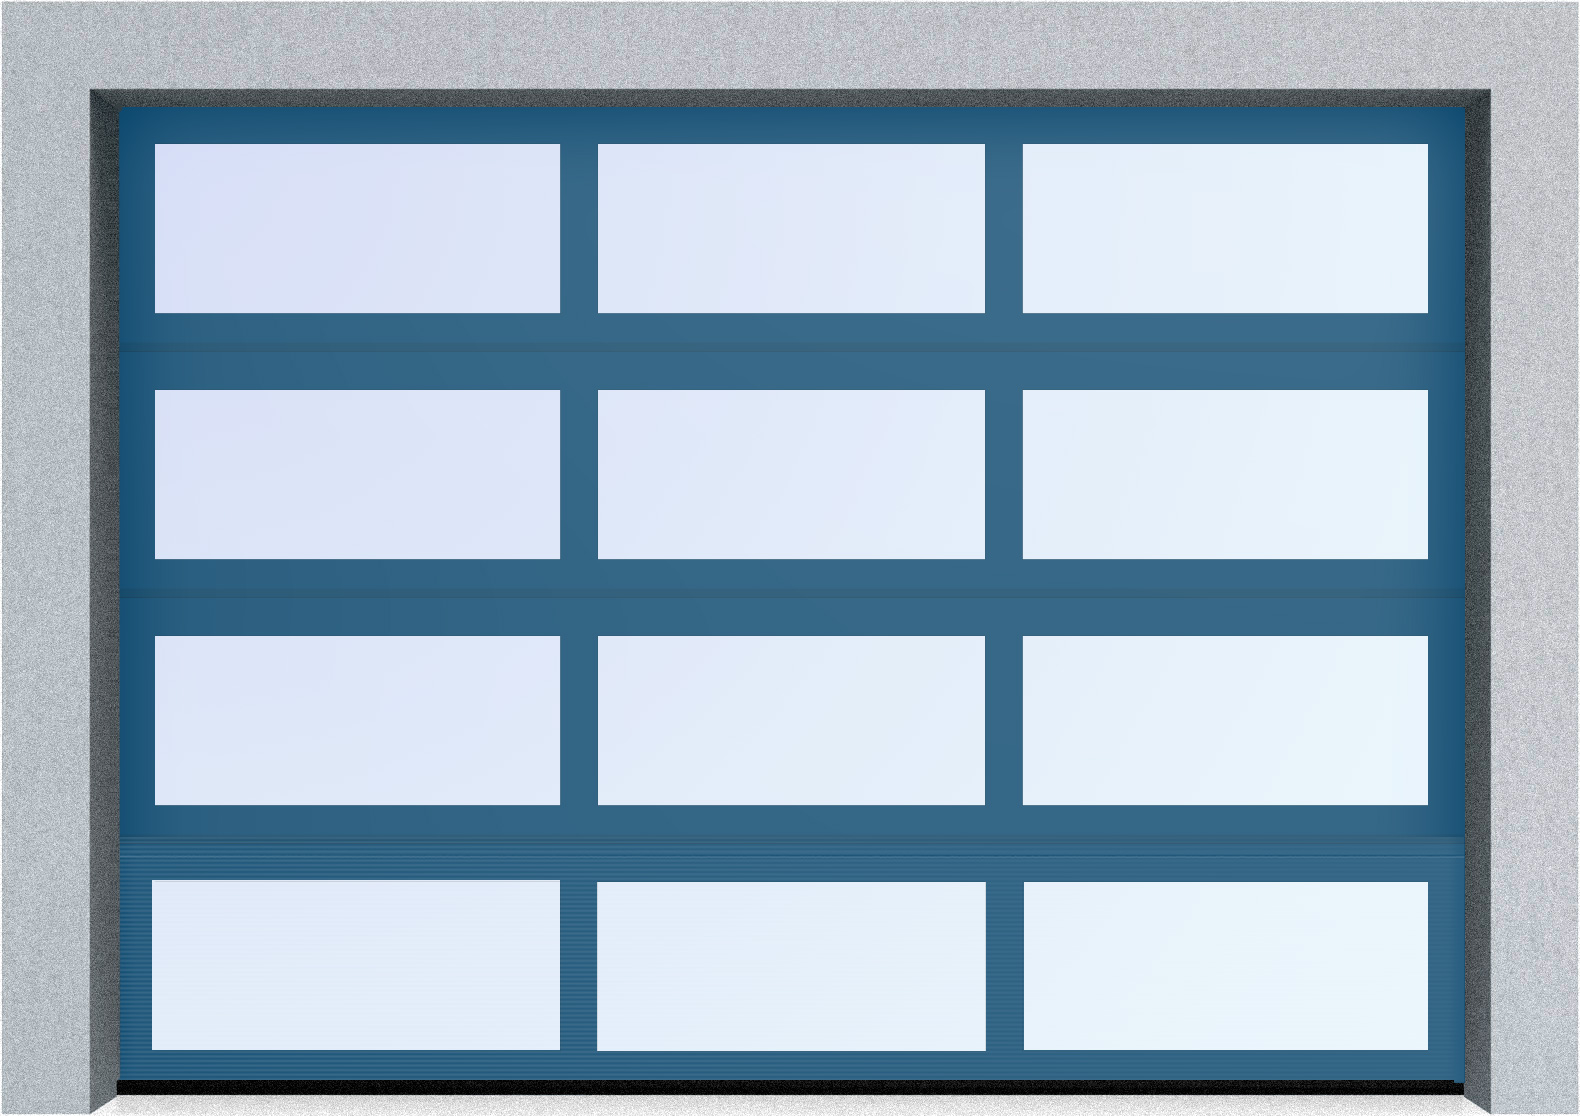  Секционные панорамные ворота серии AluTrend (АЛП) 2625х1875 нижняя панель стандартные цвета, фото 3 